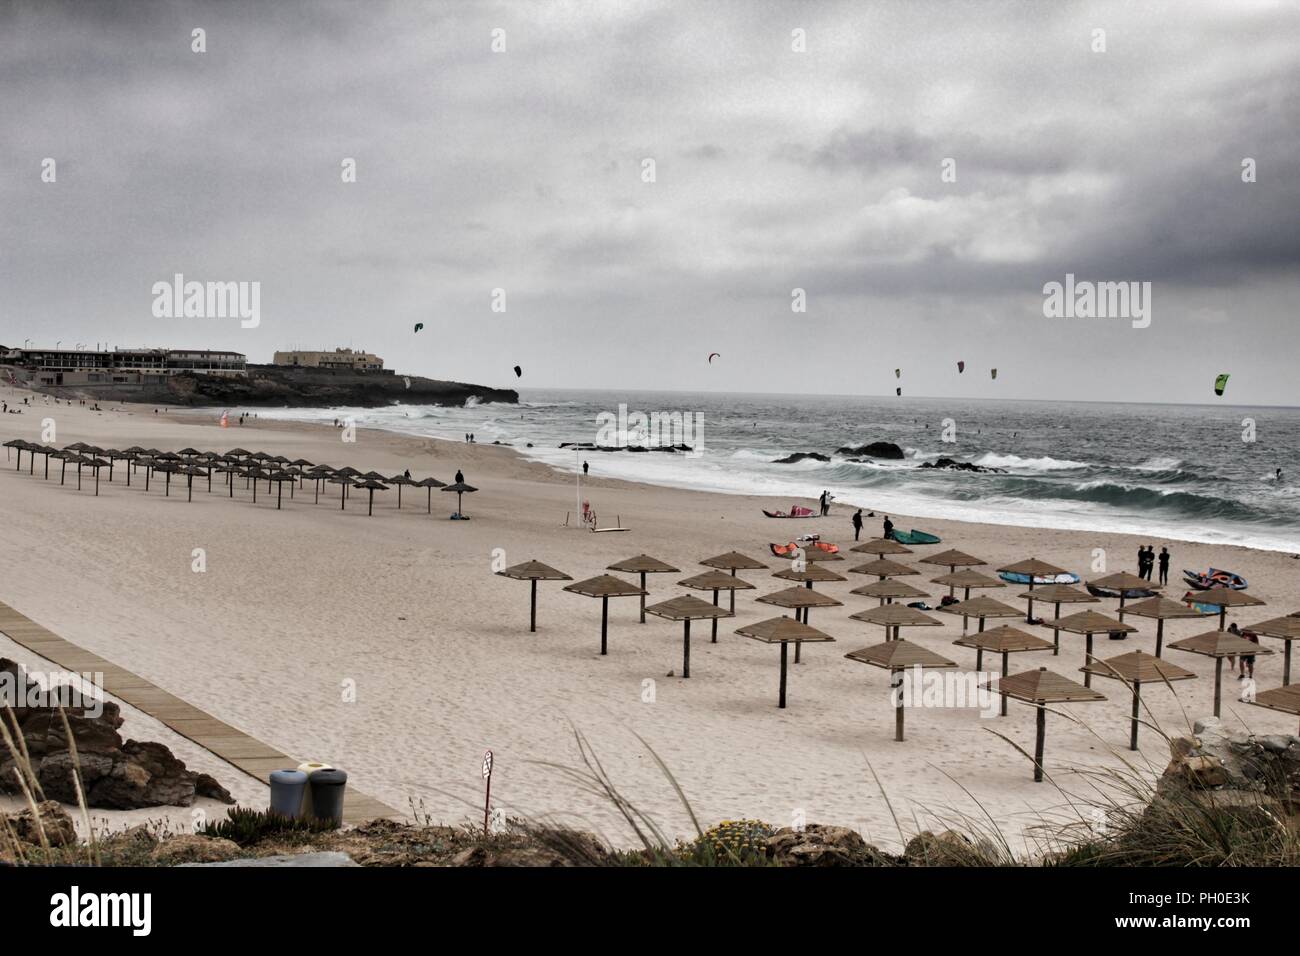 La plage de Guincho sous ciel nuageux au printemps au Portugal Banque D'Images